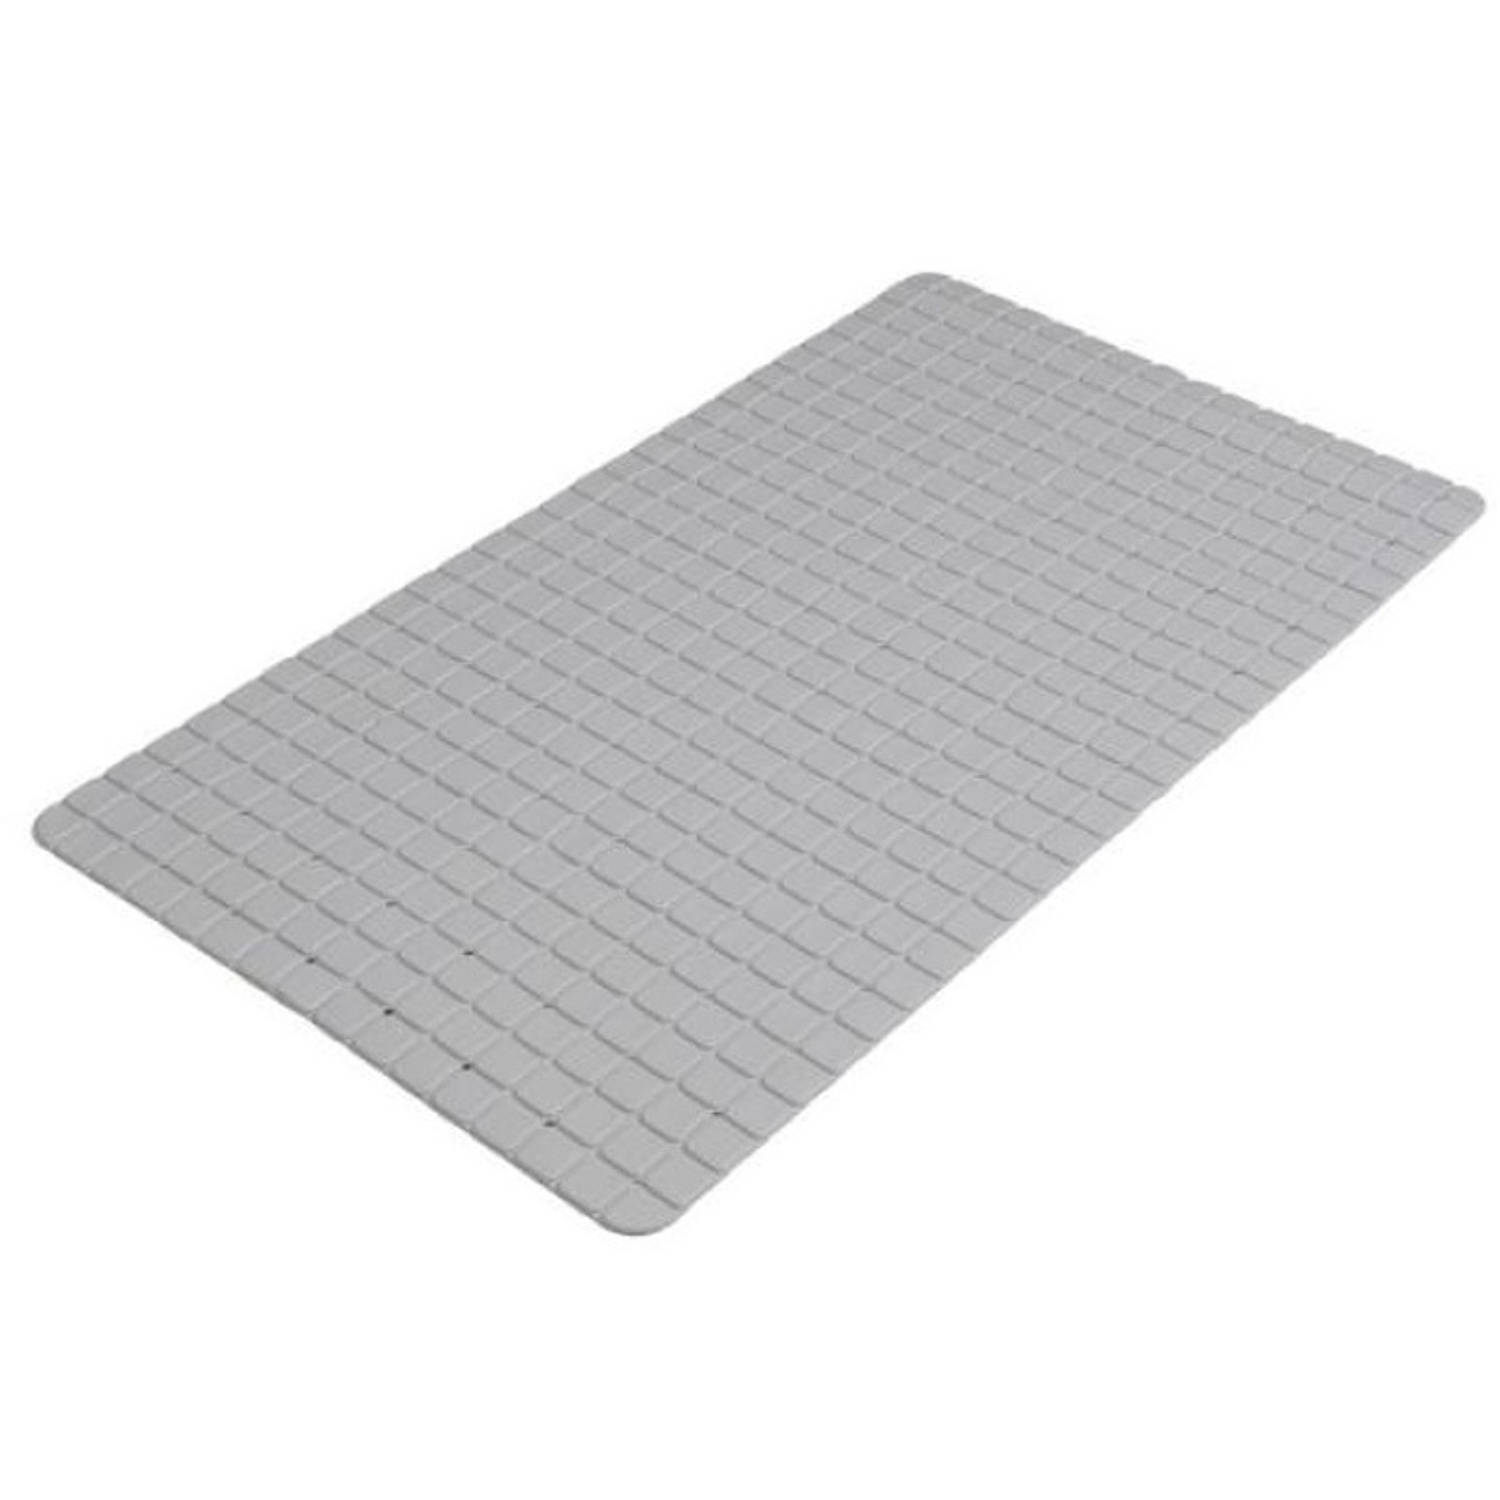 Urban Living Badkamer-douche anti slip mat rubber voor op de vloer steengrijs 39 x 69 cm Badmatjes